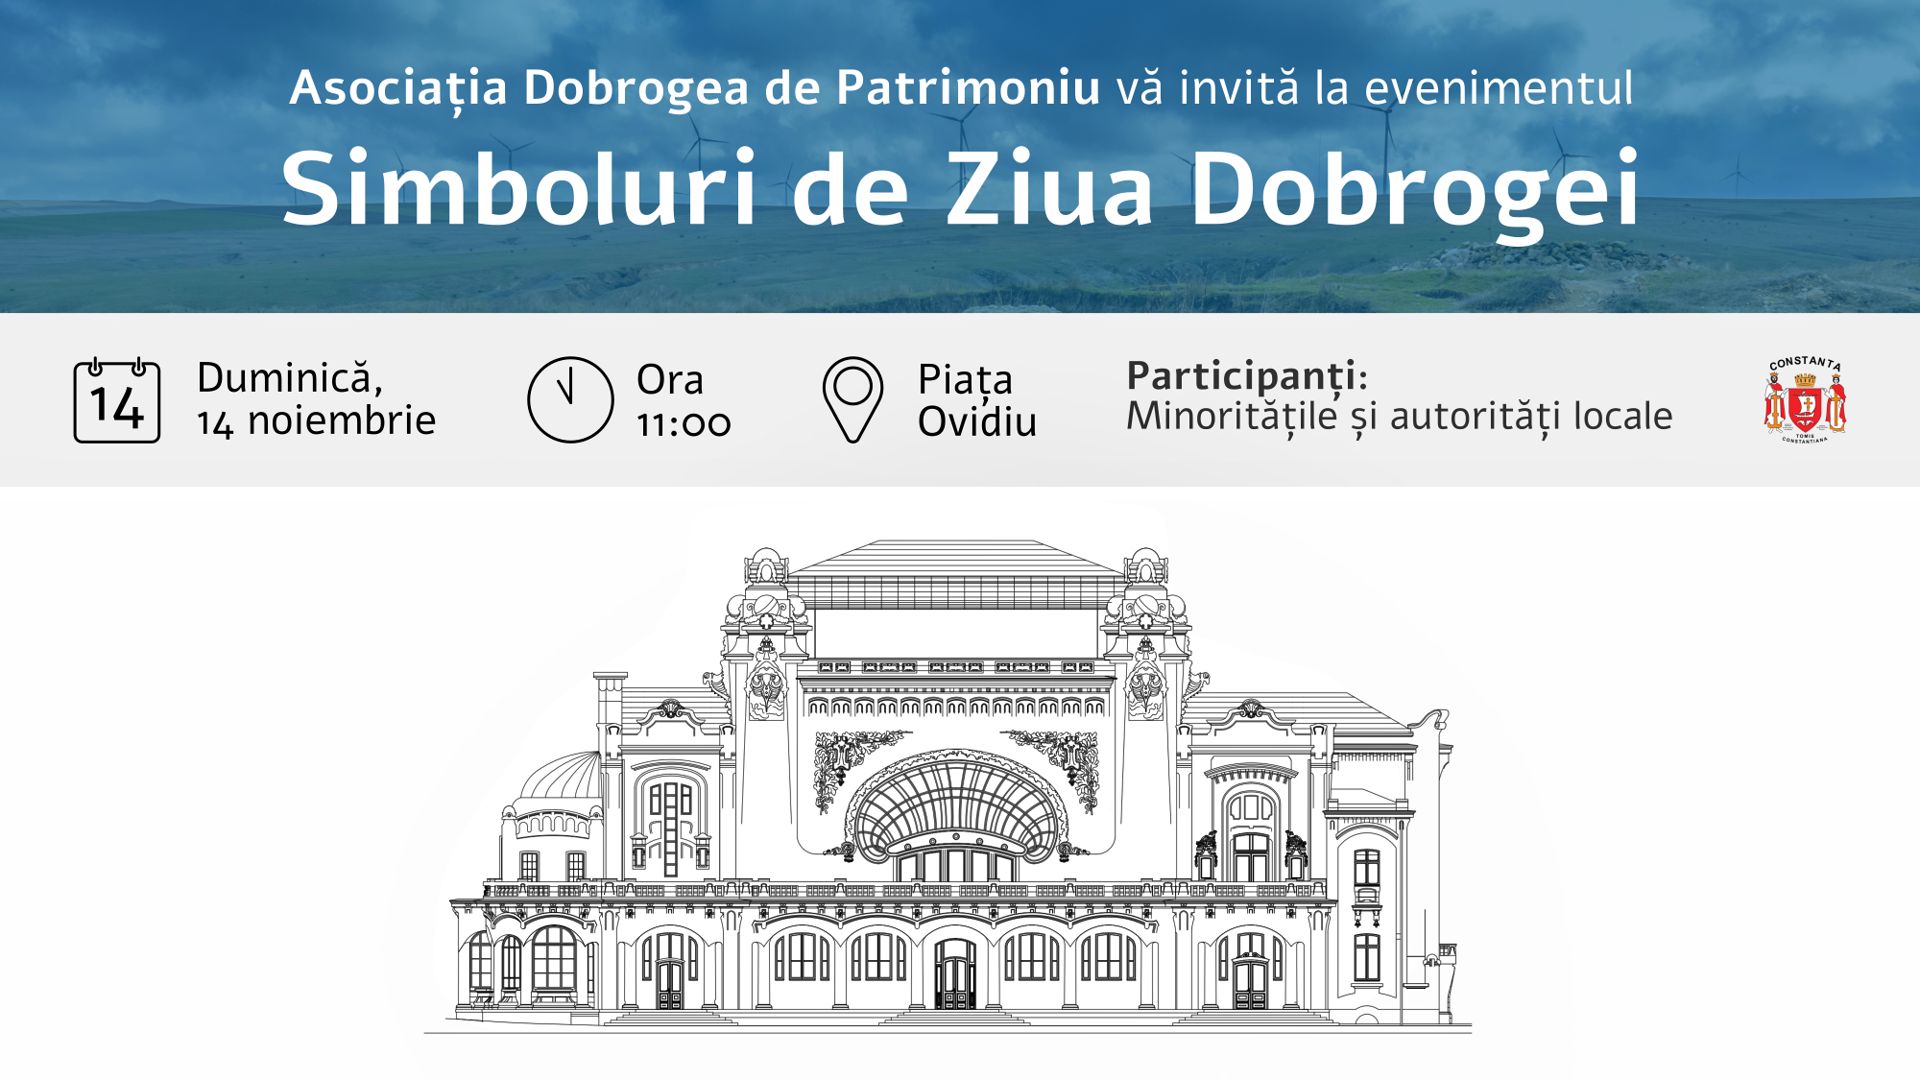 ”Simboluri de Ziua Dobrogei”, un eveniment organizat de Asociația Dobrogea de Patrimoniu